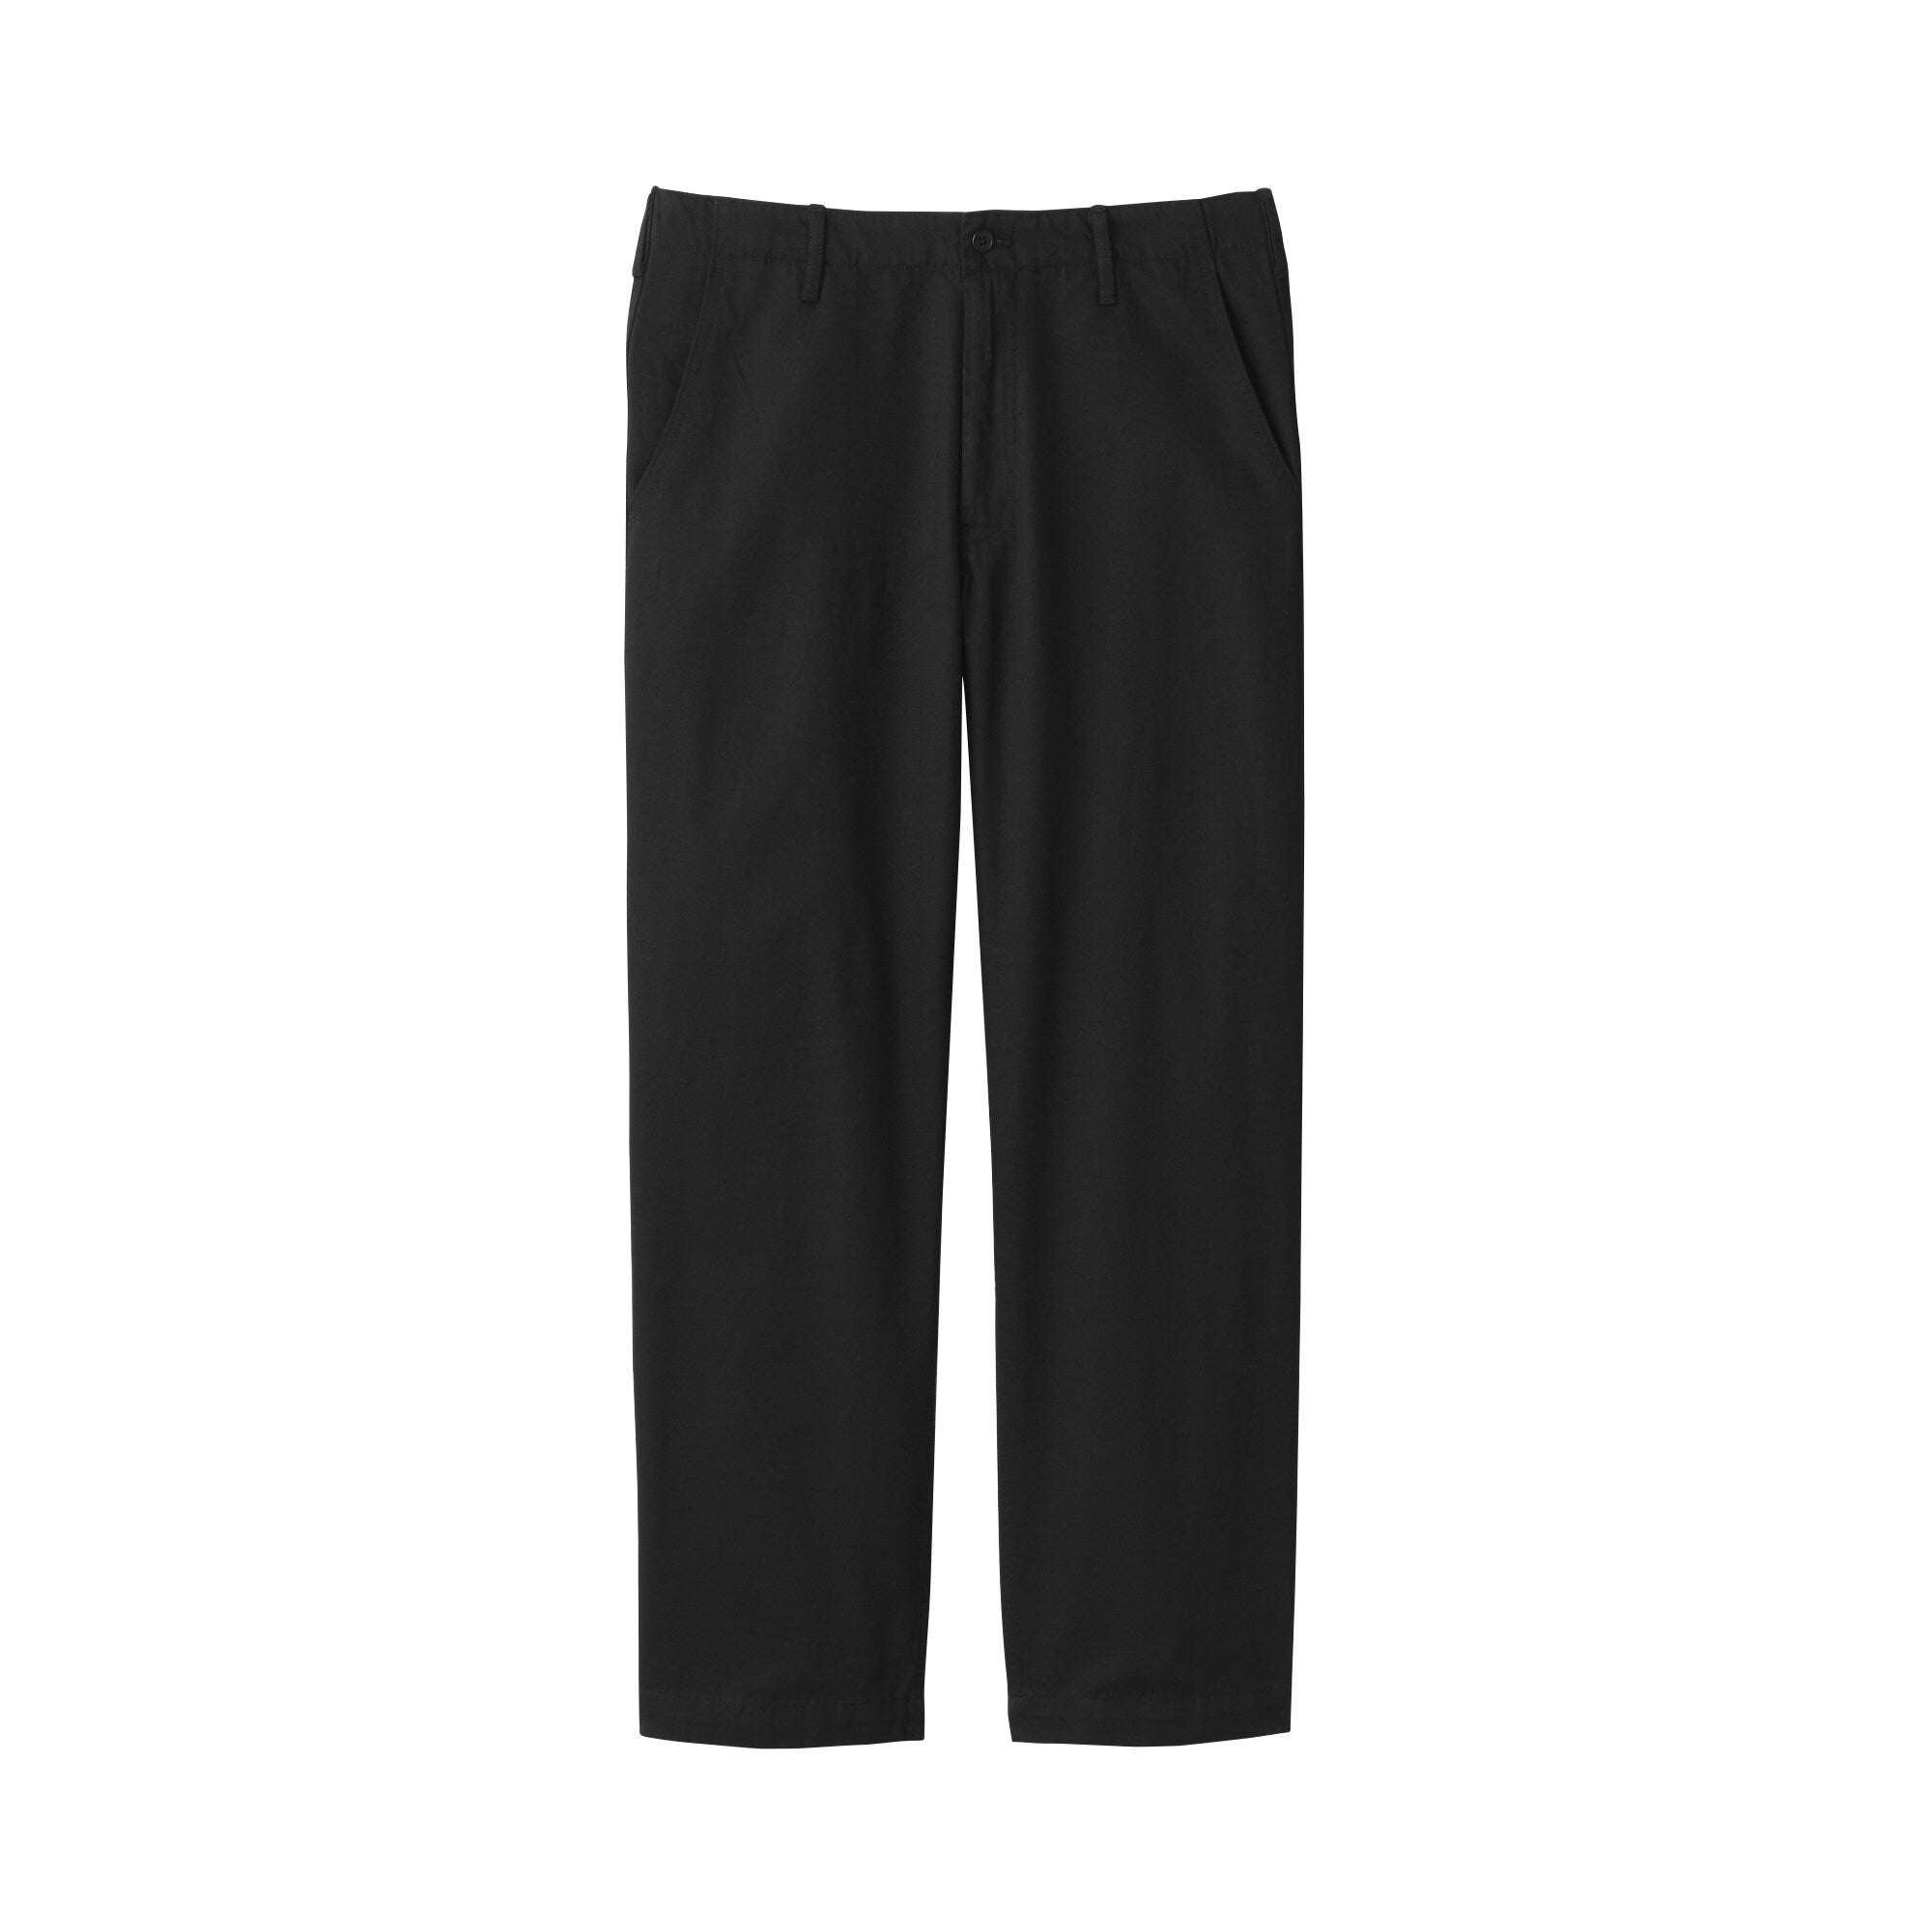 Men's Slub Yarn Chino Regular Pants (L 30inch / 76cm)